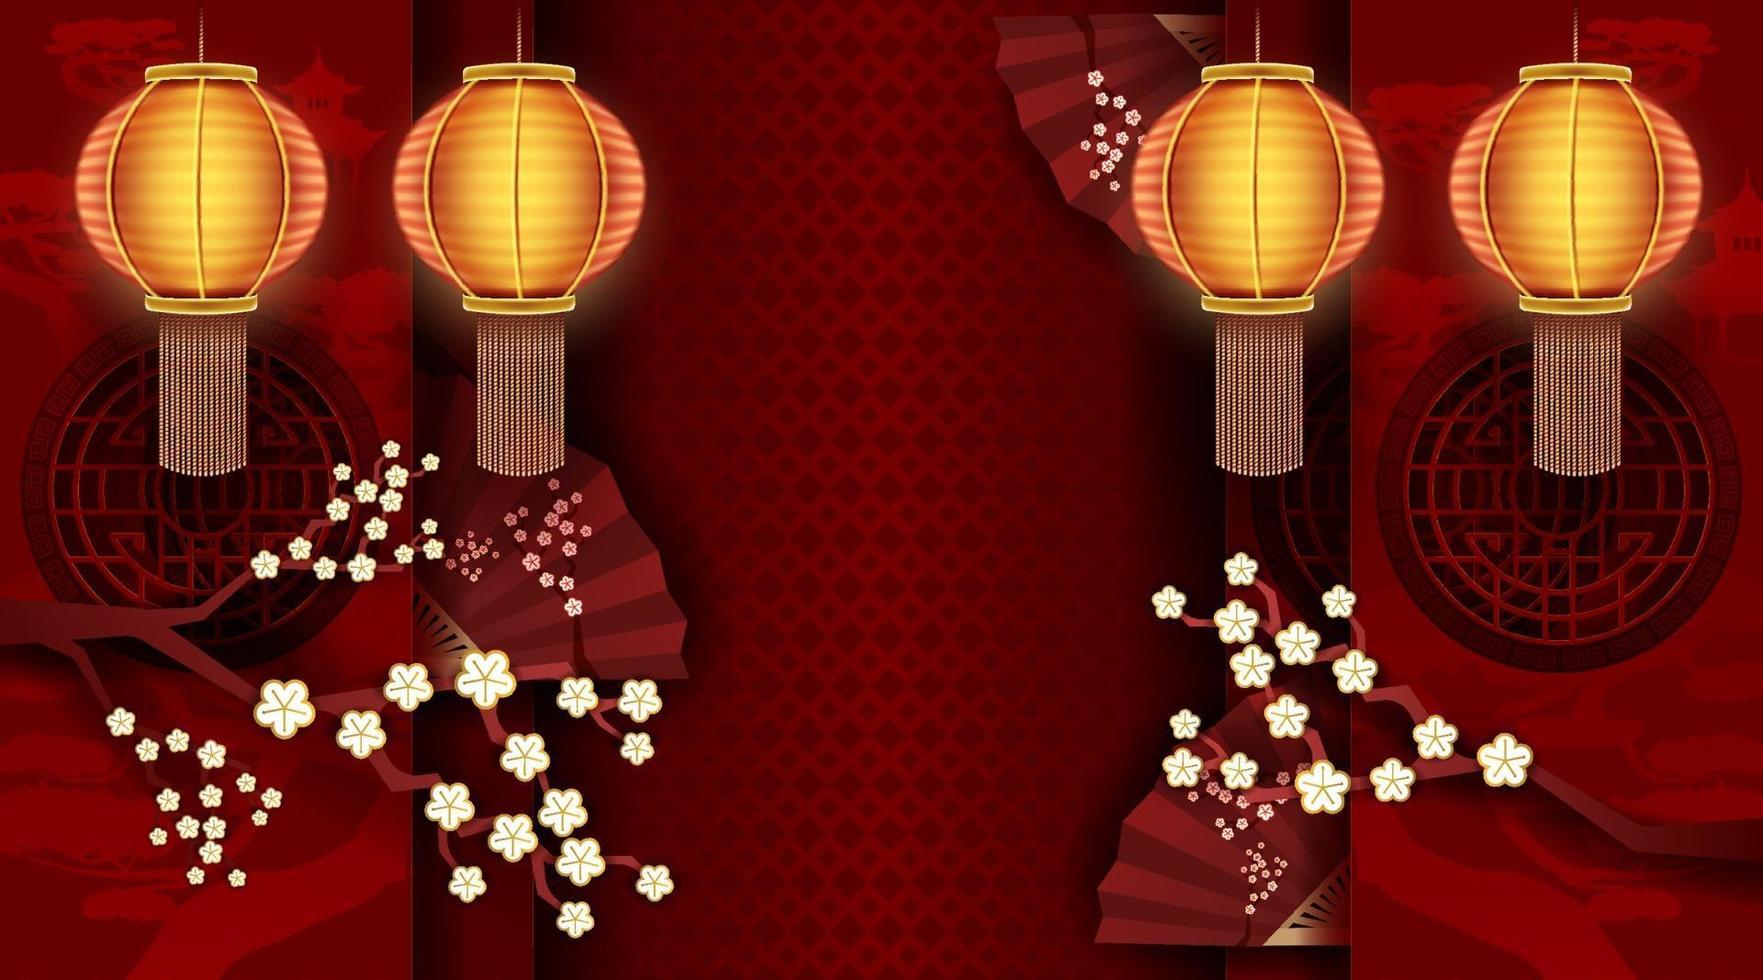 capodanno cinese con carta rossa tagliata arte e sfondi artigianali. vettore